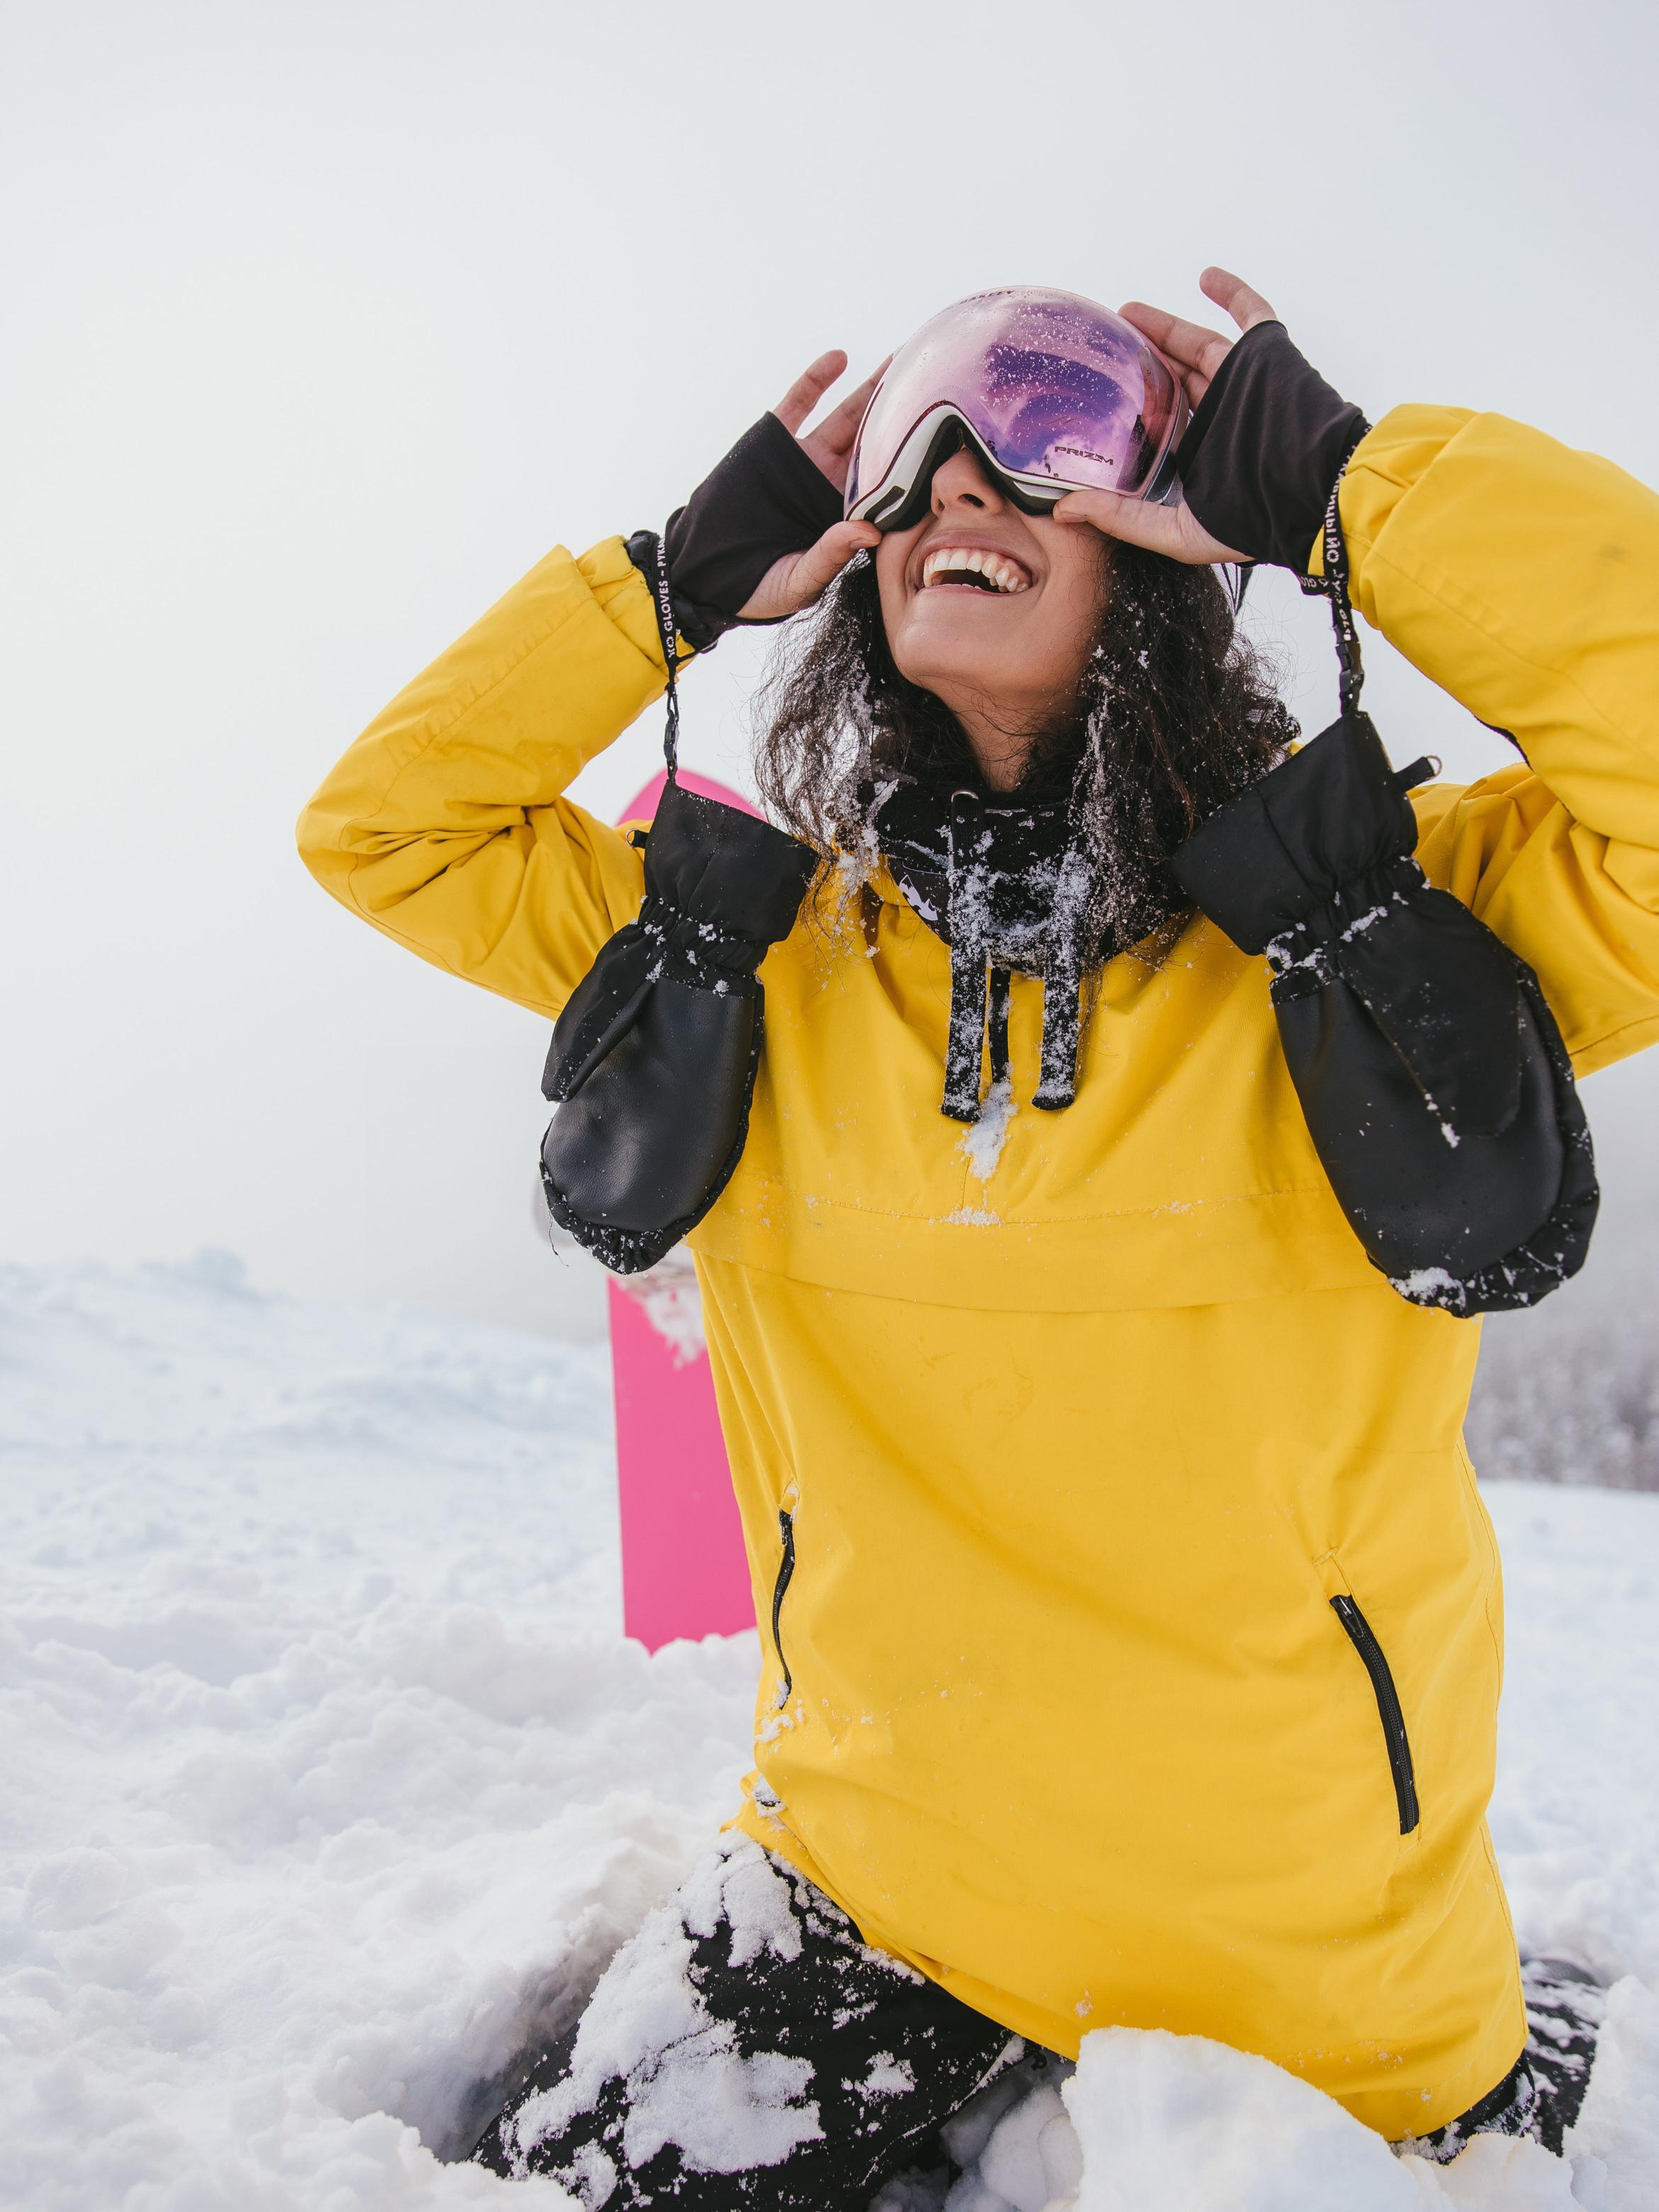 Attività invernali nelle zone montane italiane: sci, snowboard e molto altro